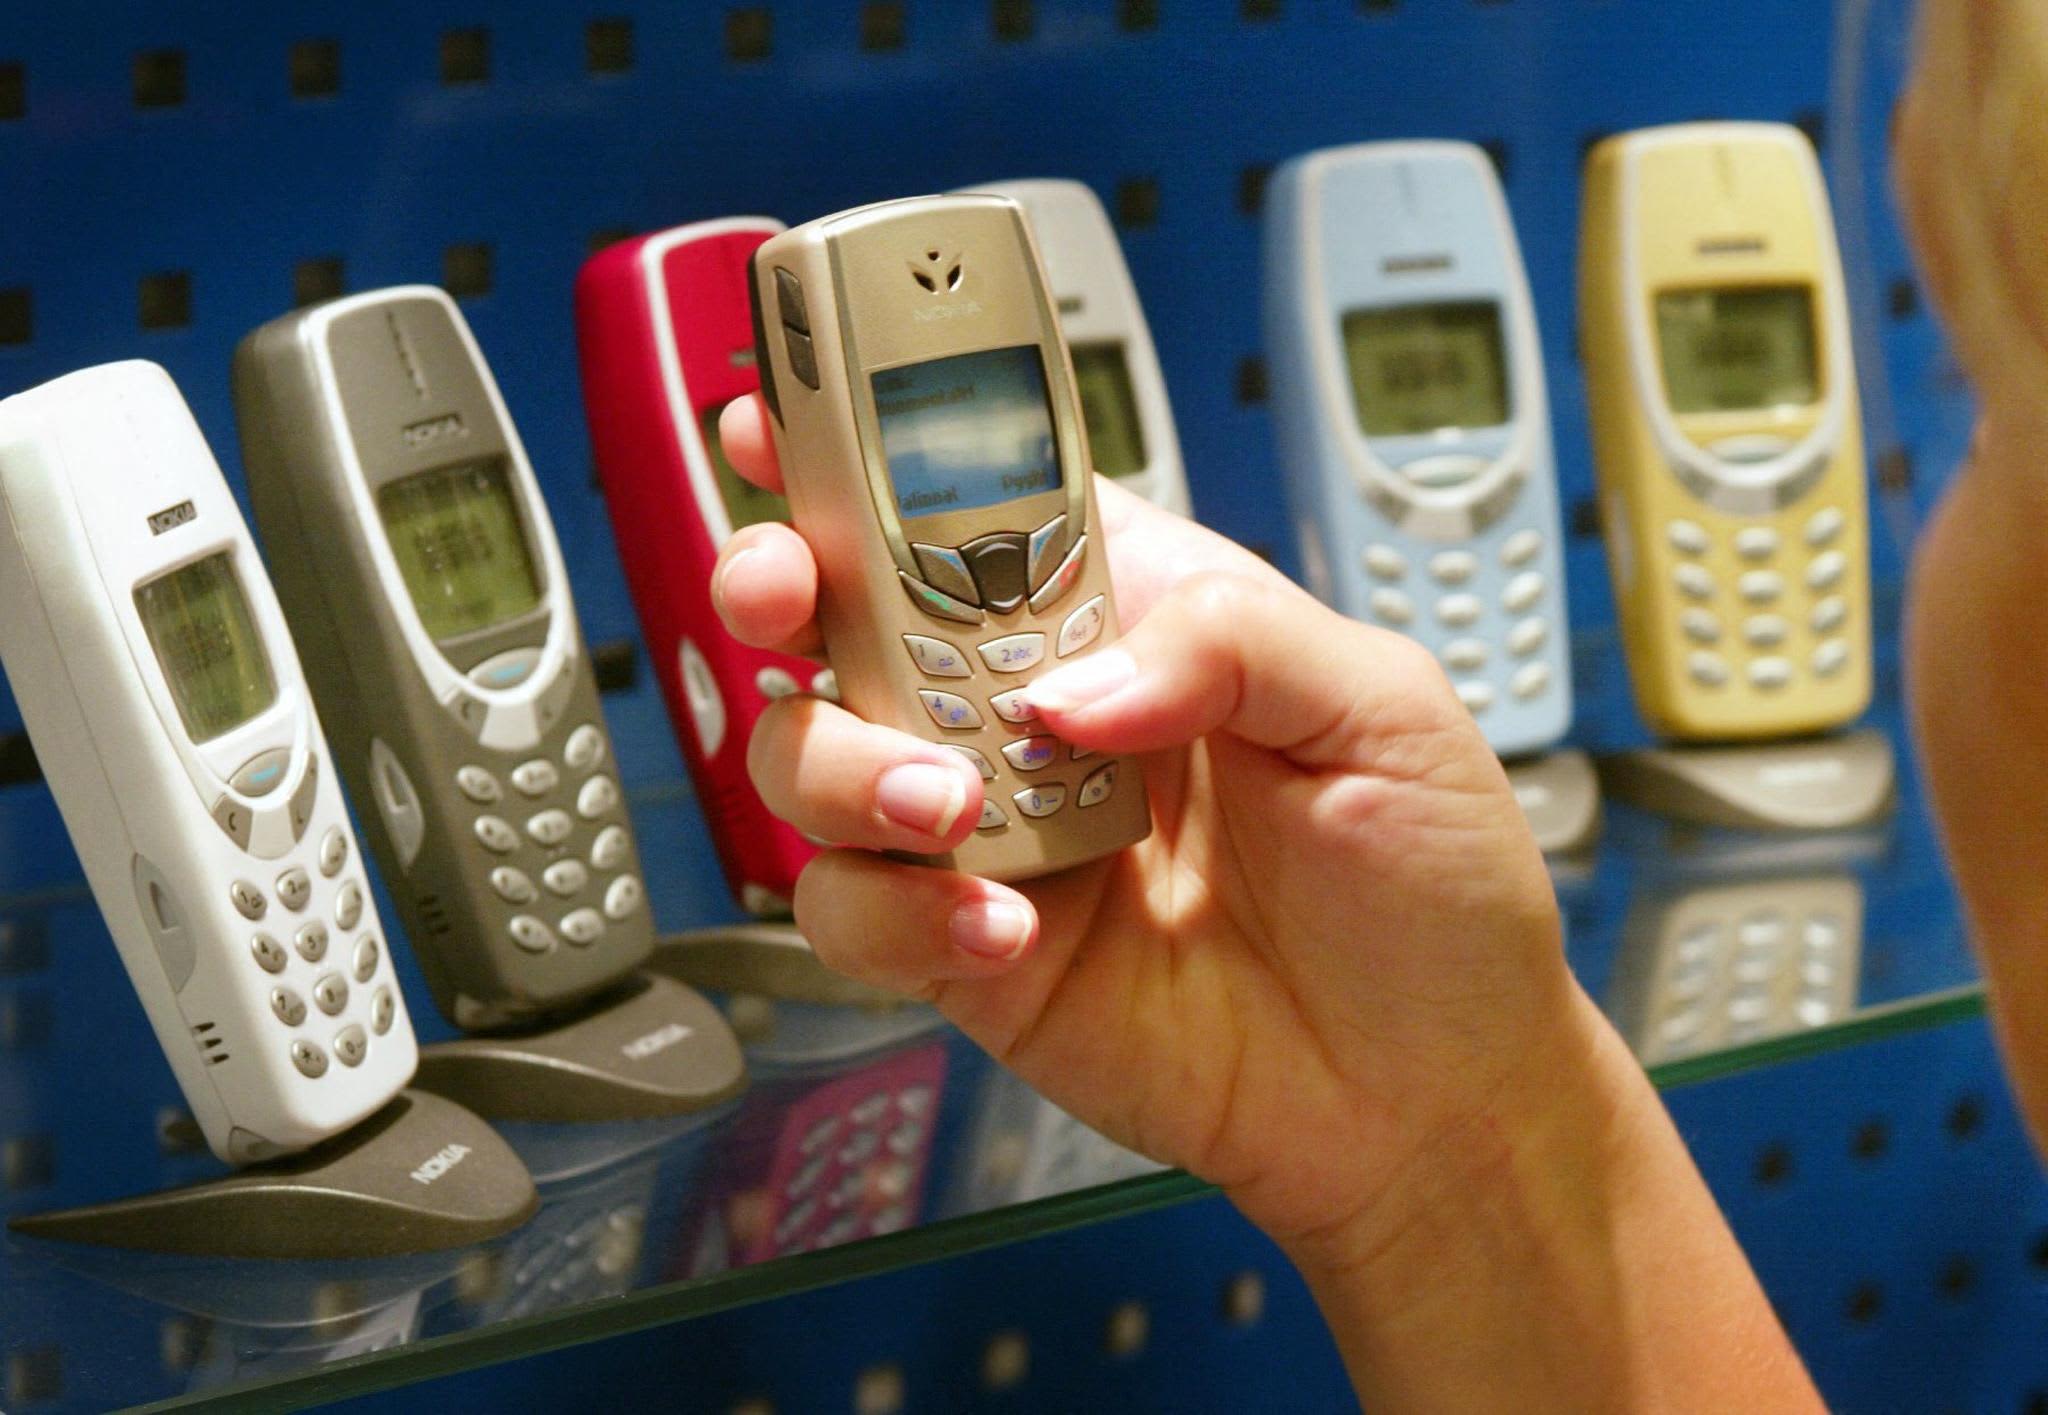 Dumme Telefone sind in den USA auf dem Vormarsch, da Gen Z die Bildschirmzeit begrenzt